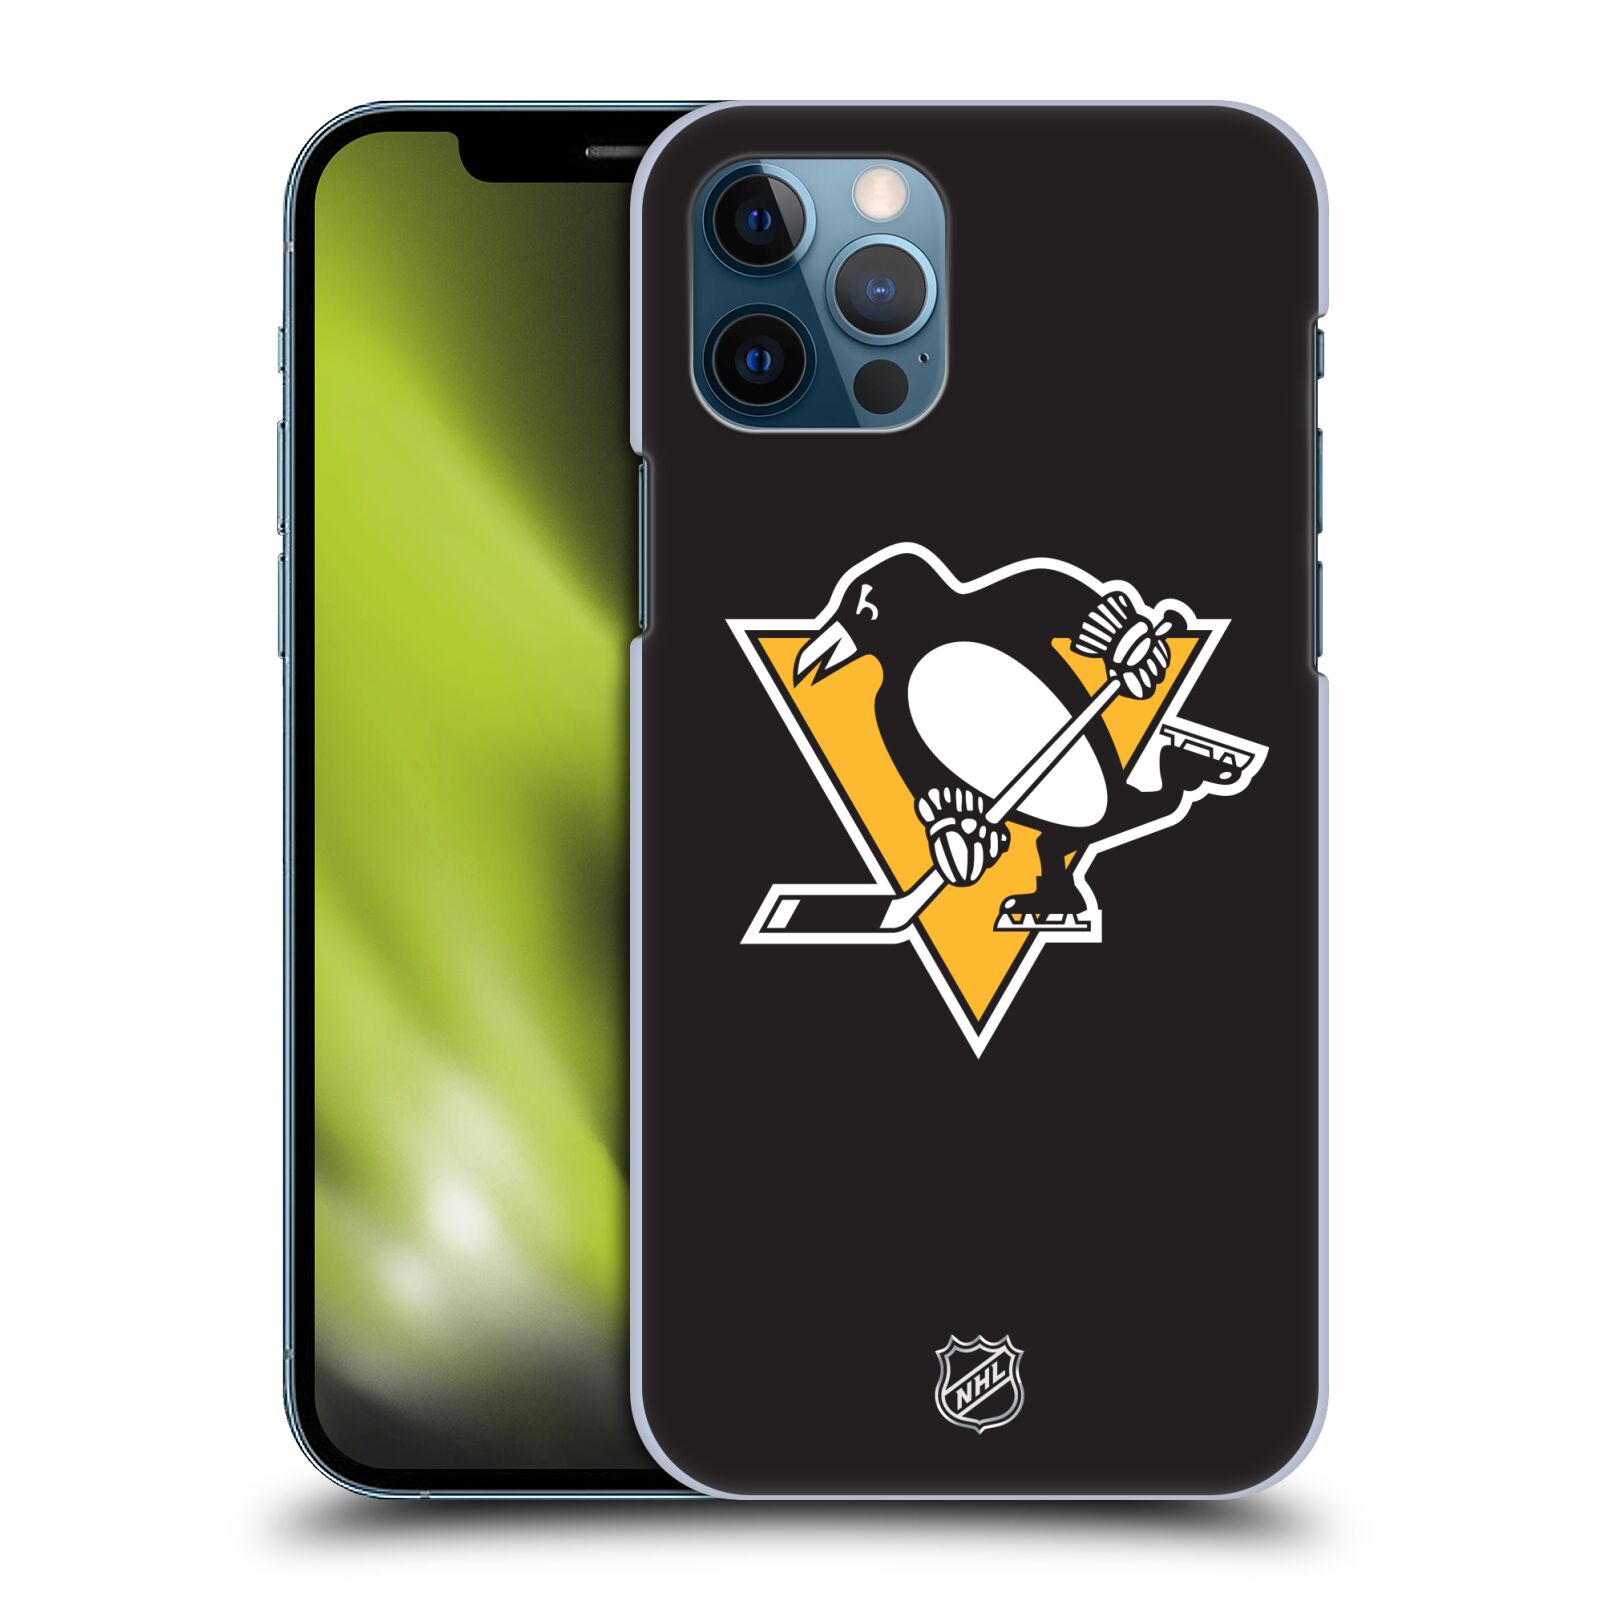 Pouzdro na mobil Apple Iphone 12 / 12 PRO - HEAD CASE - Hokej NHL - Pittsburgh Penguins - černé pozadí znak